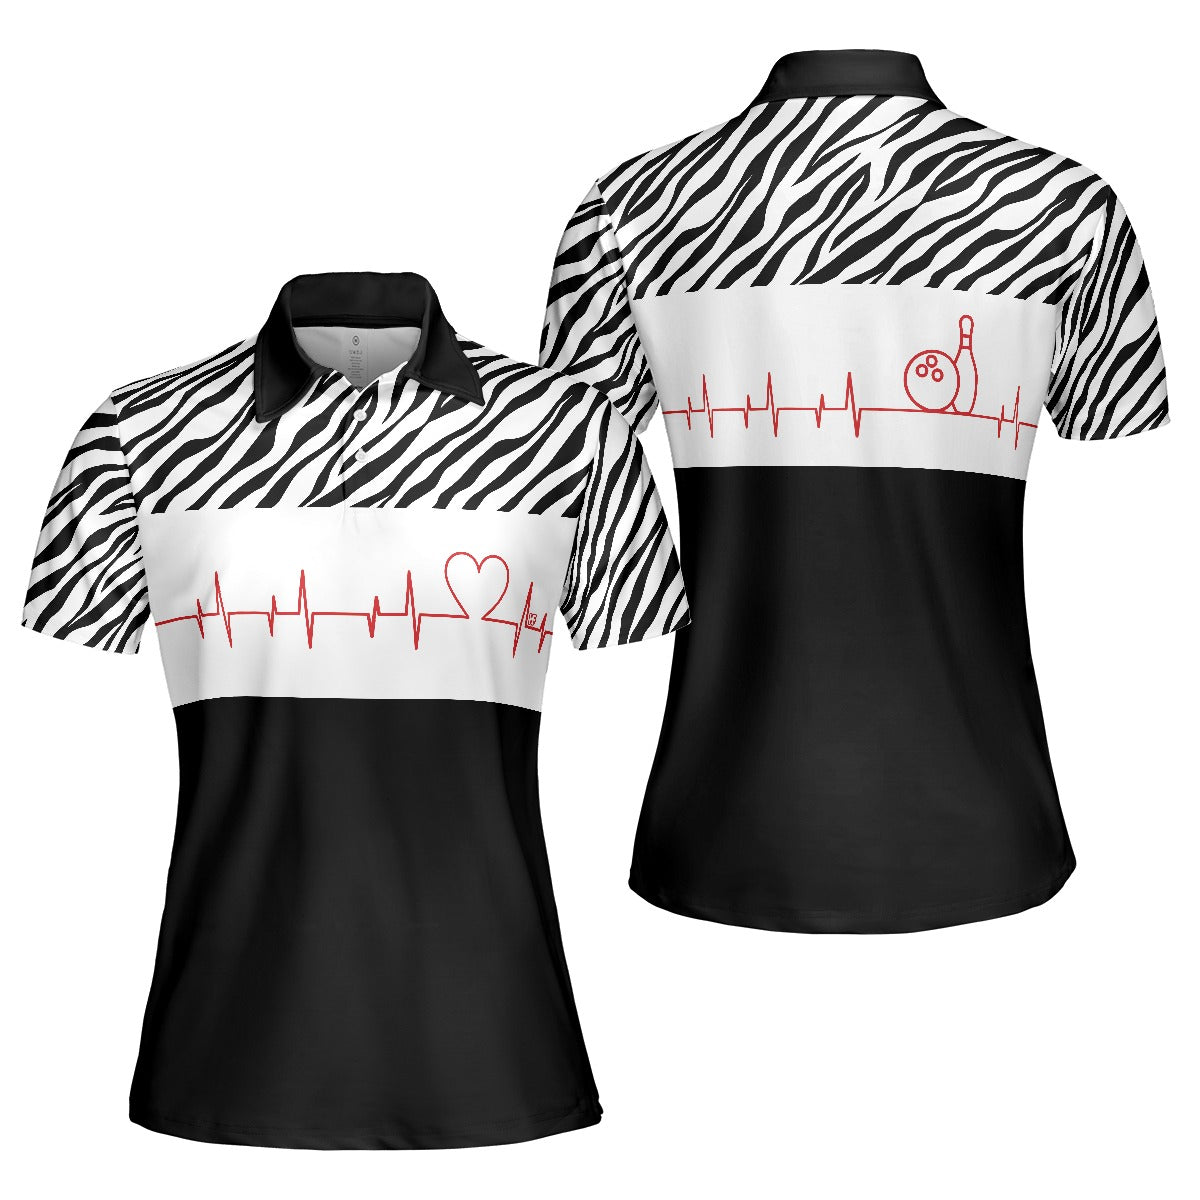 Bowling Women Polo Shirt - Bowling Heartbeat Women Polo Shirt, Zebra Pattern Bowling Polo Shirt - Gift For Wife, Family, Bowling Lovers